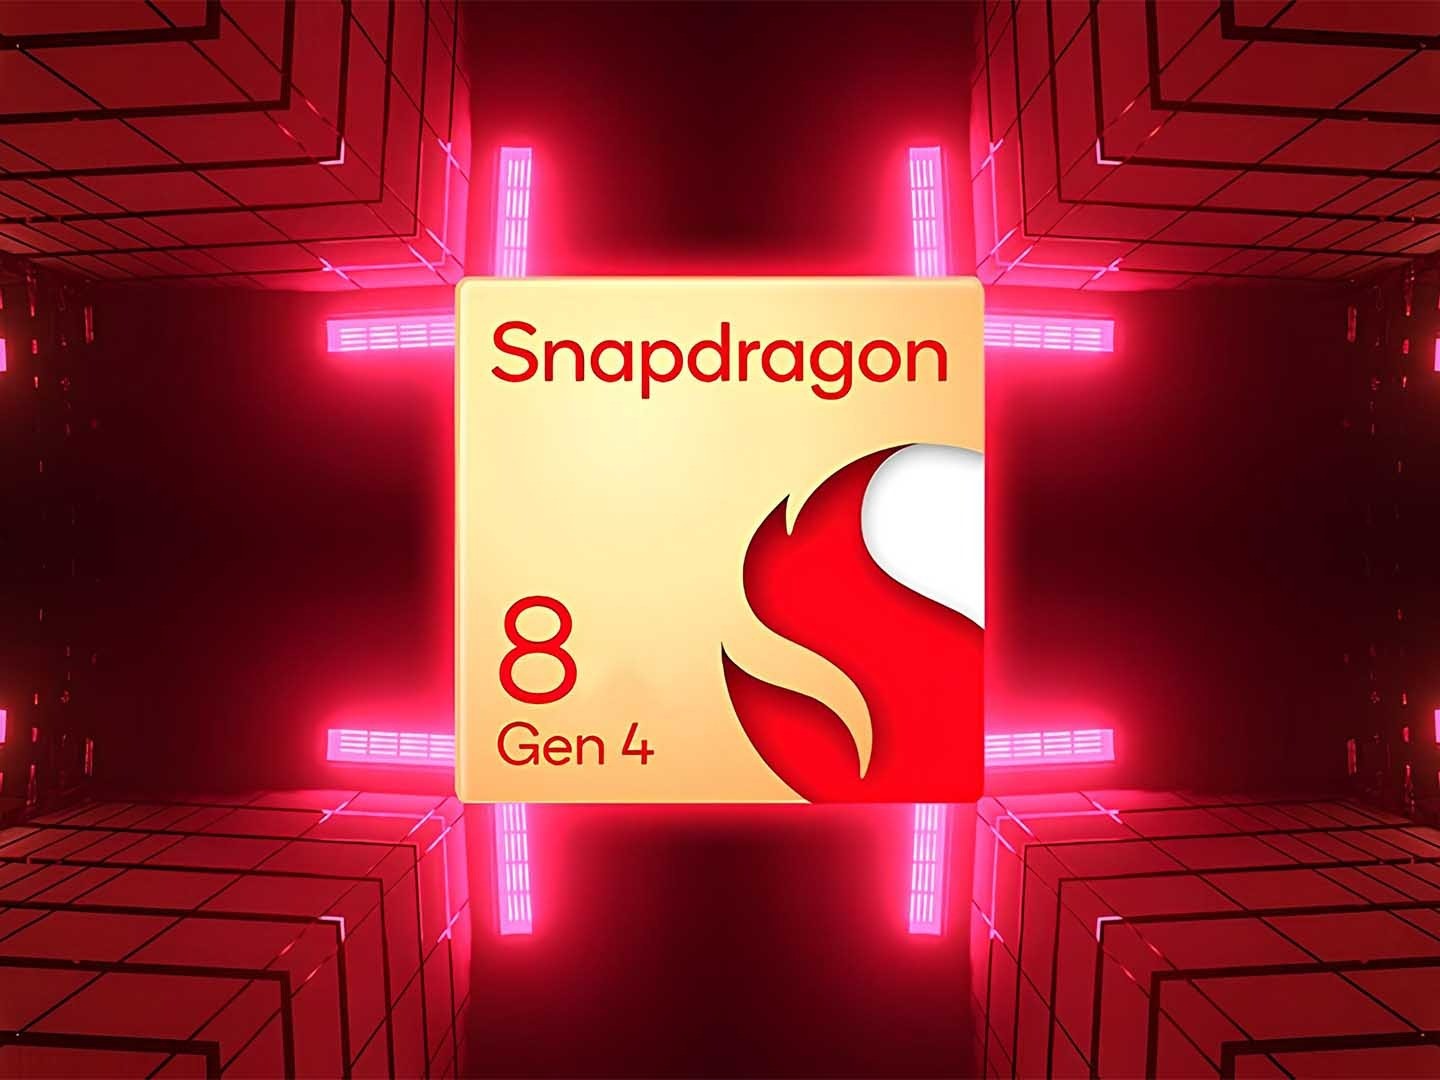 Lo Snapdragon 8 Gen 4 esclusiva di due smartphone per il lancio